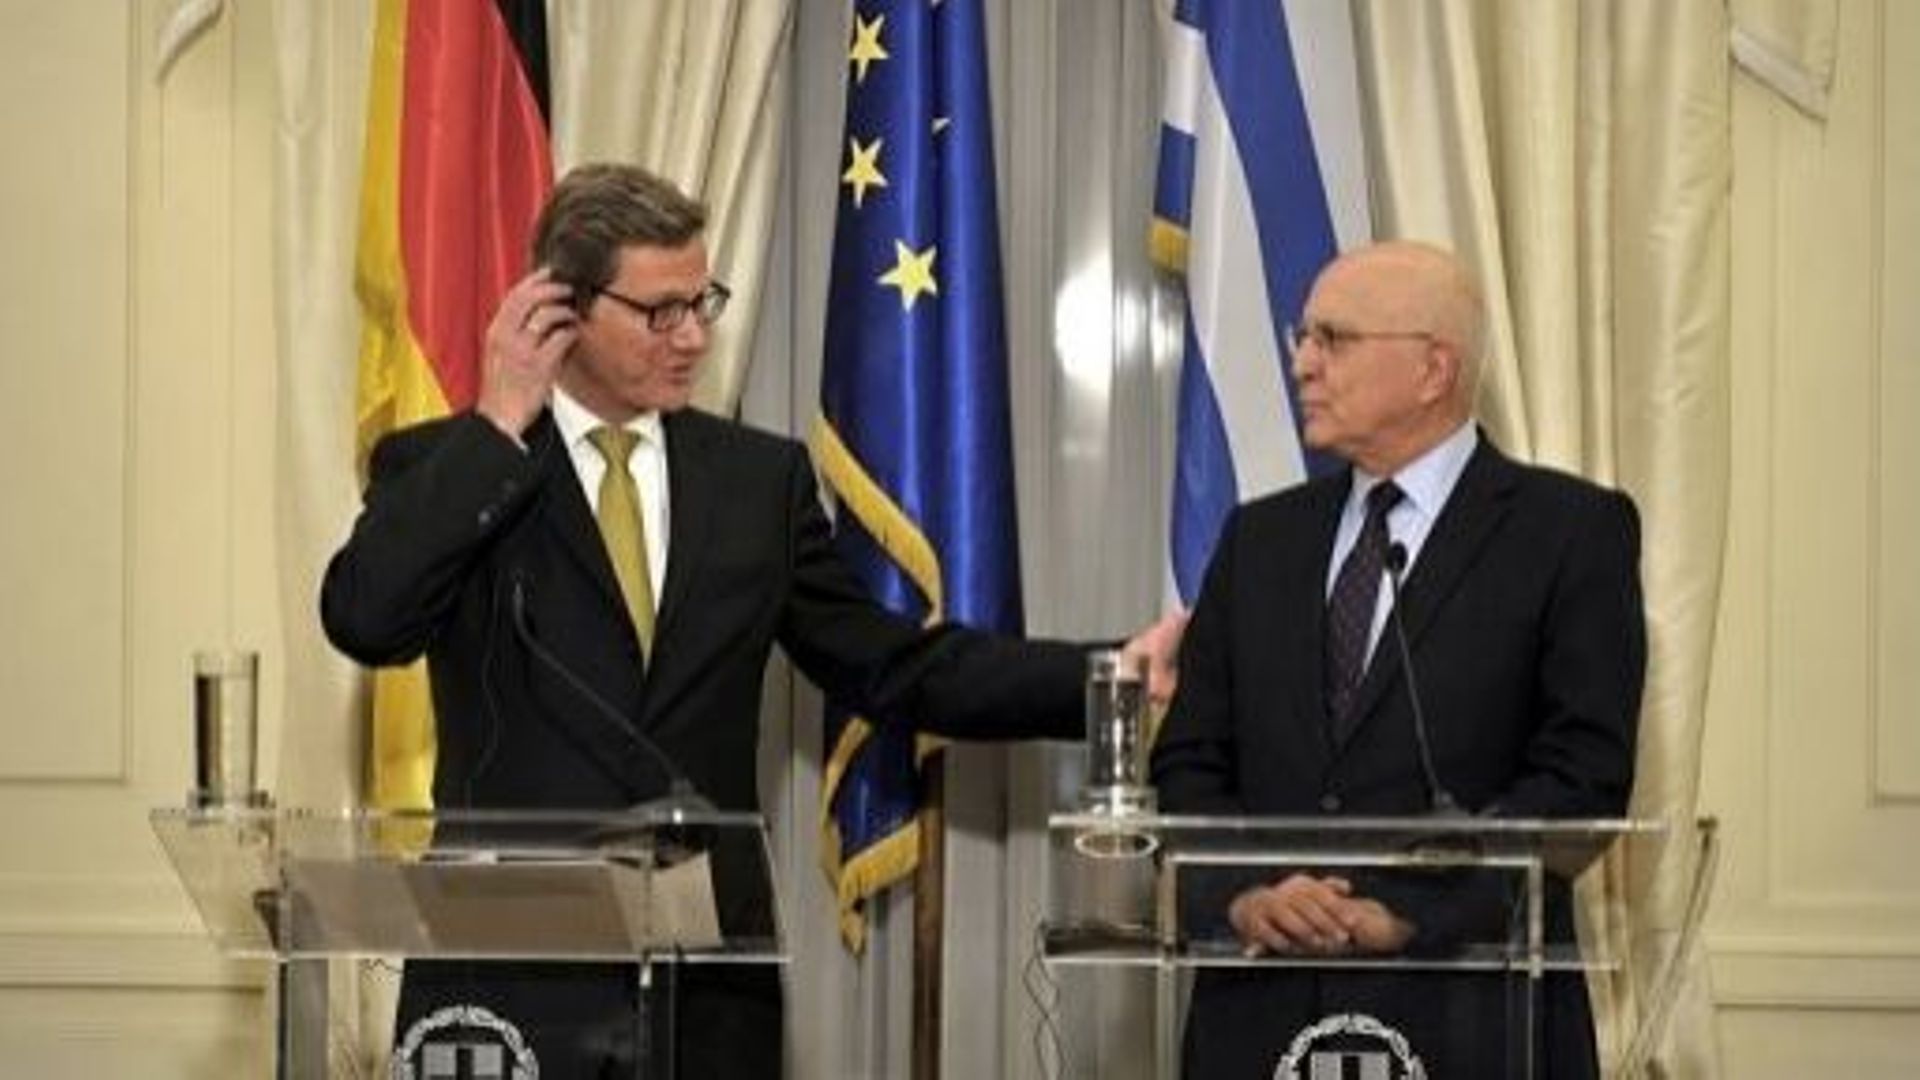 Le ministre allemand des Affaires étrangères Guido Westerwelle (D) et son homologue grec Stavros Dimas, le 15 janvier 2012 à Athènes